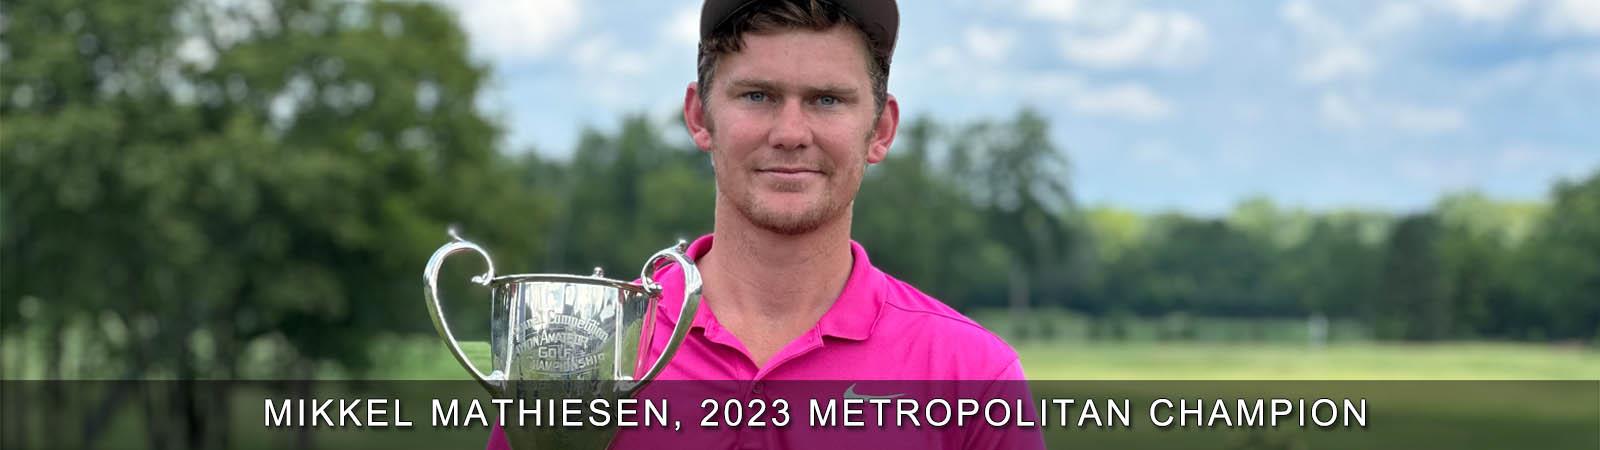 2023_-_Mikkel_Mathiesen_Championship_Banner